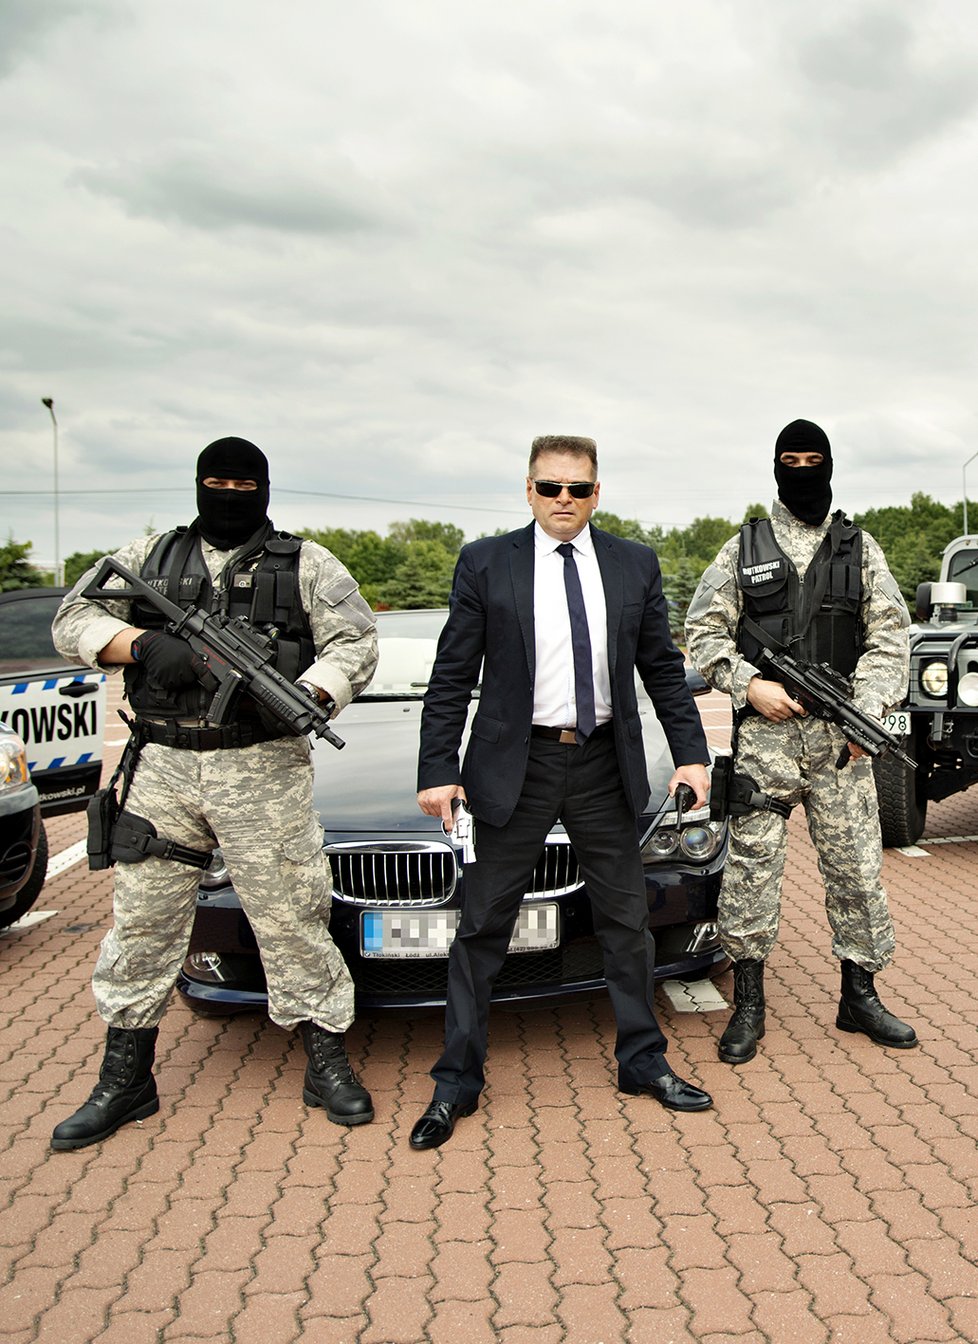 Detektiv Rutkowski se svými ozbrojenci a částí svého vozového parku. Nechybí ani dobře vybavený vůz Hummer.